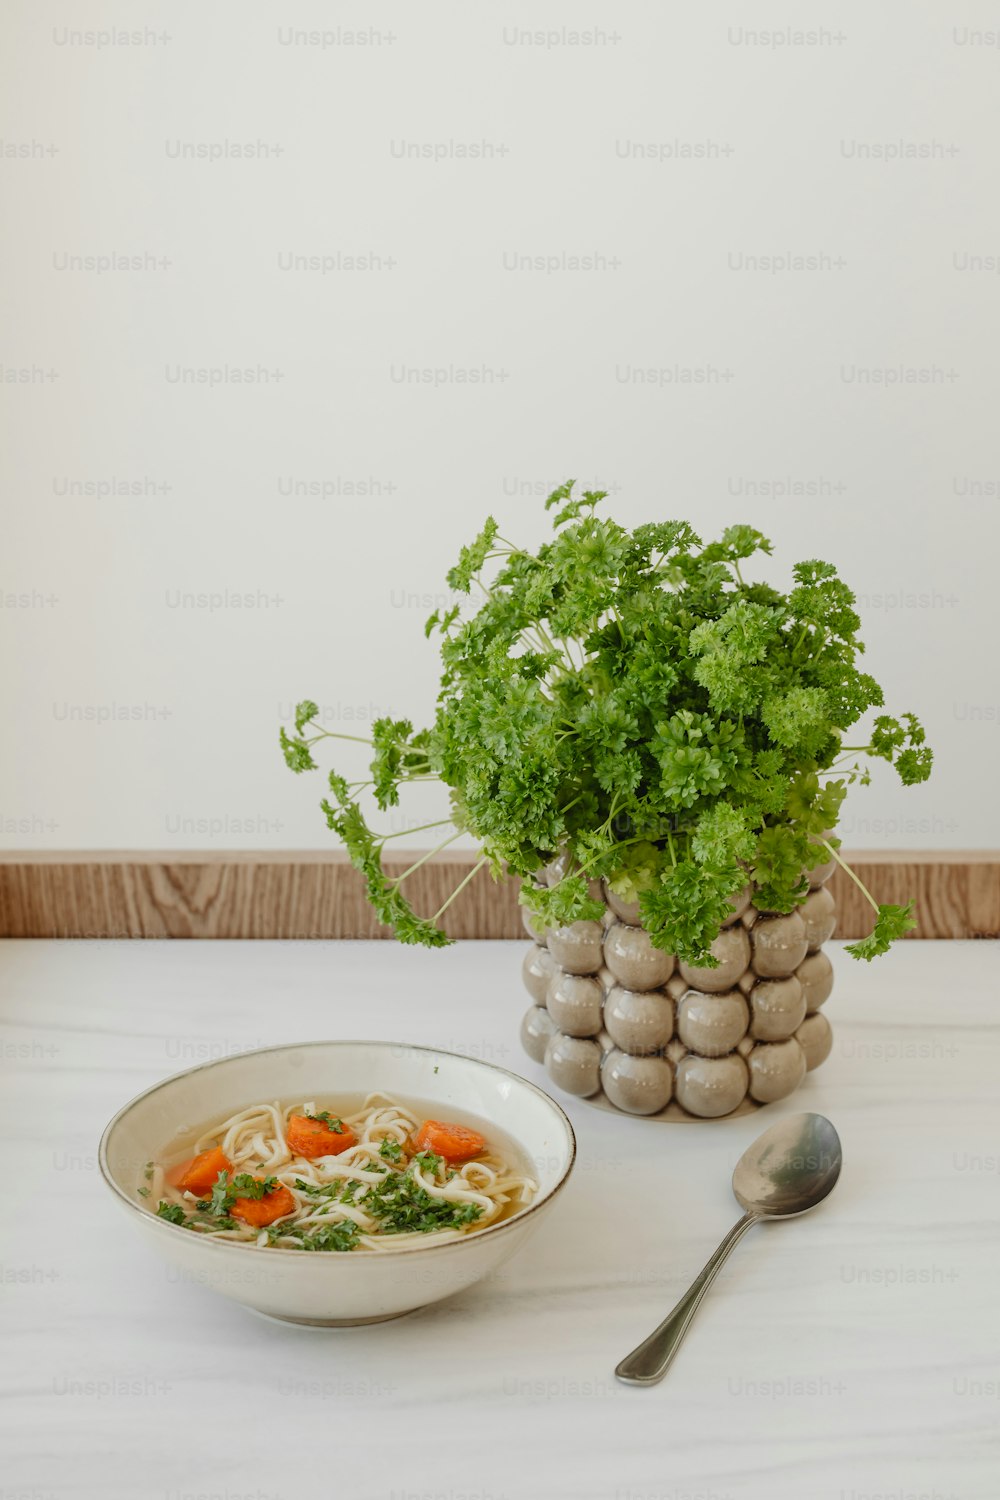 un plato de sopa junto a una planta en maceta